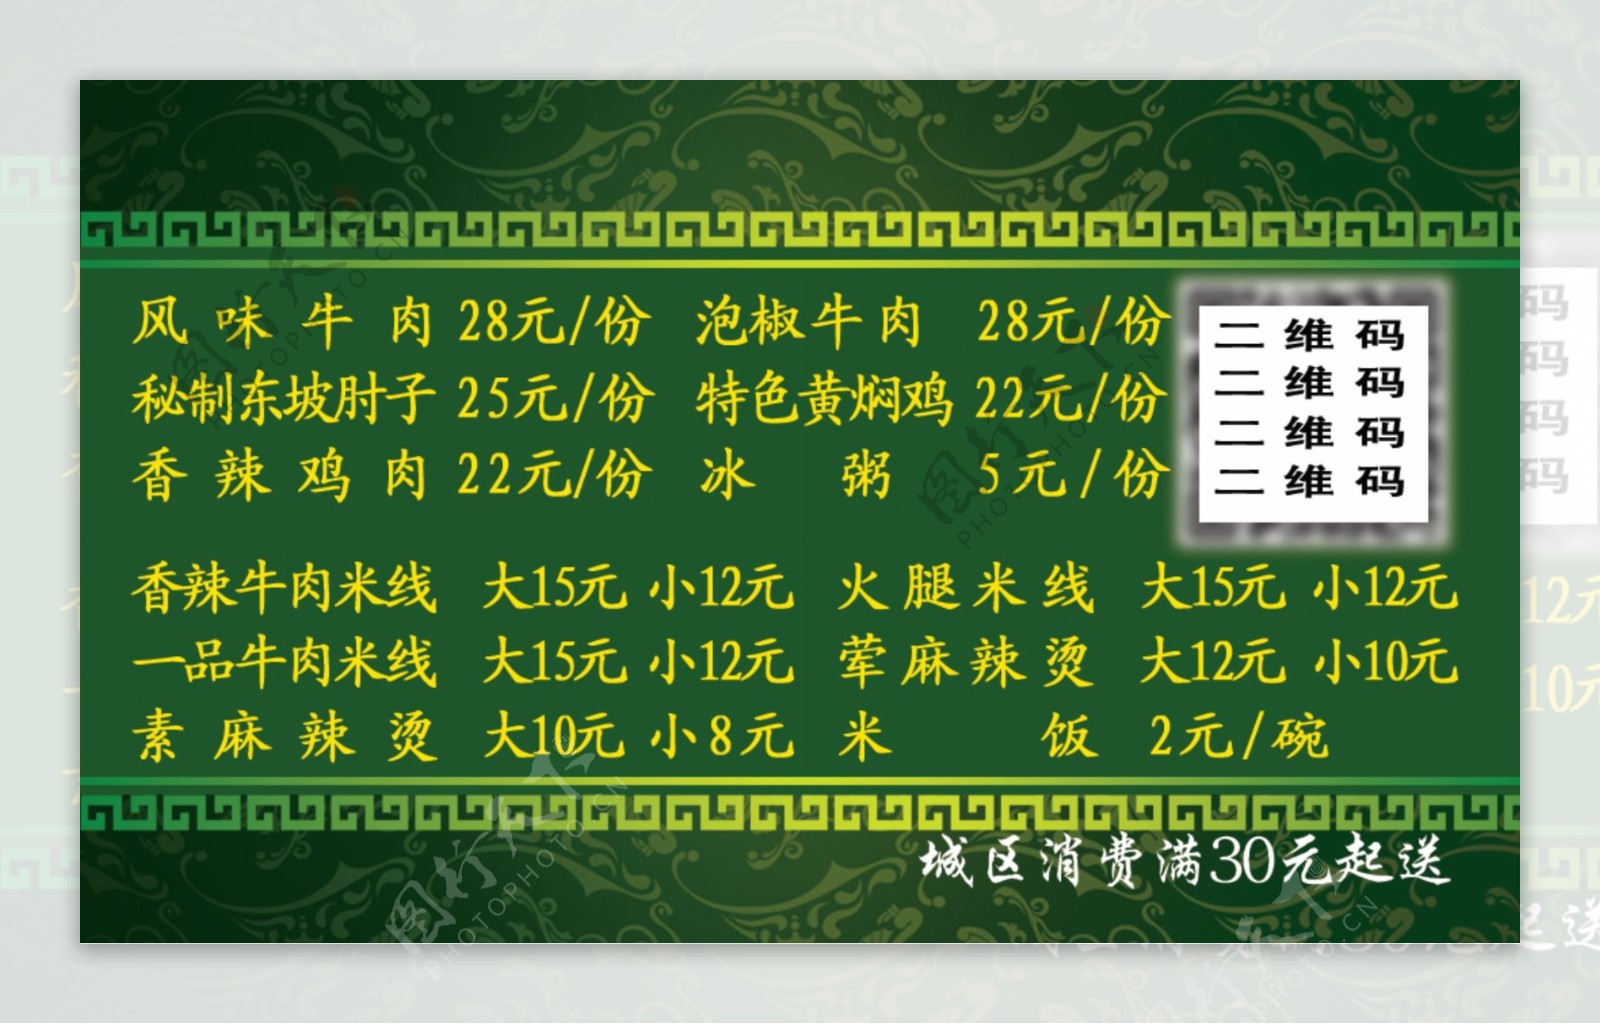 简约绿色中国风订餐卡设计